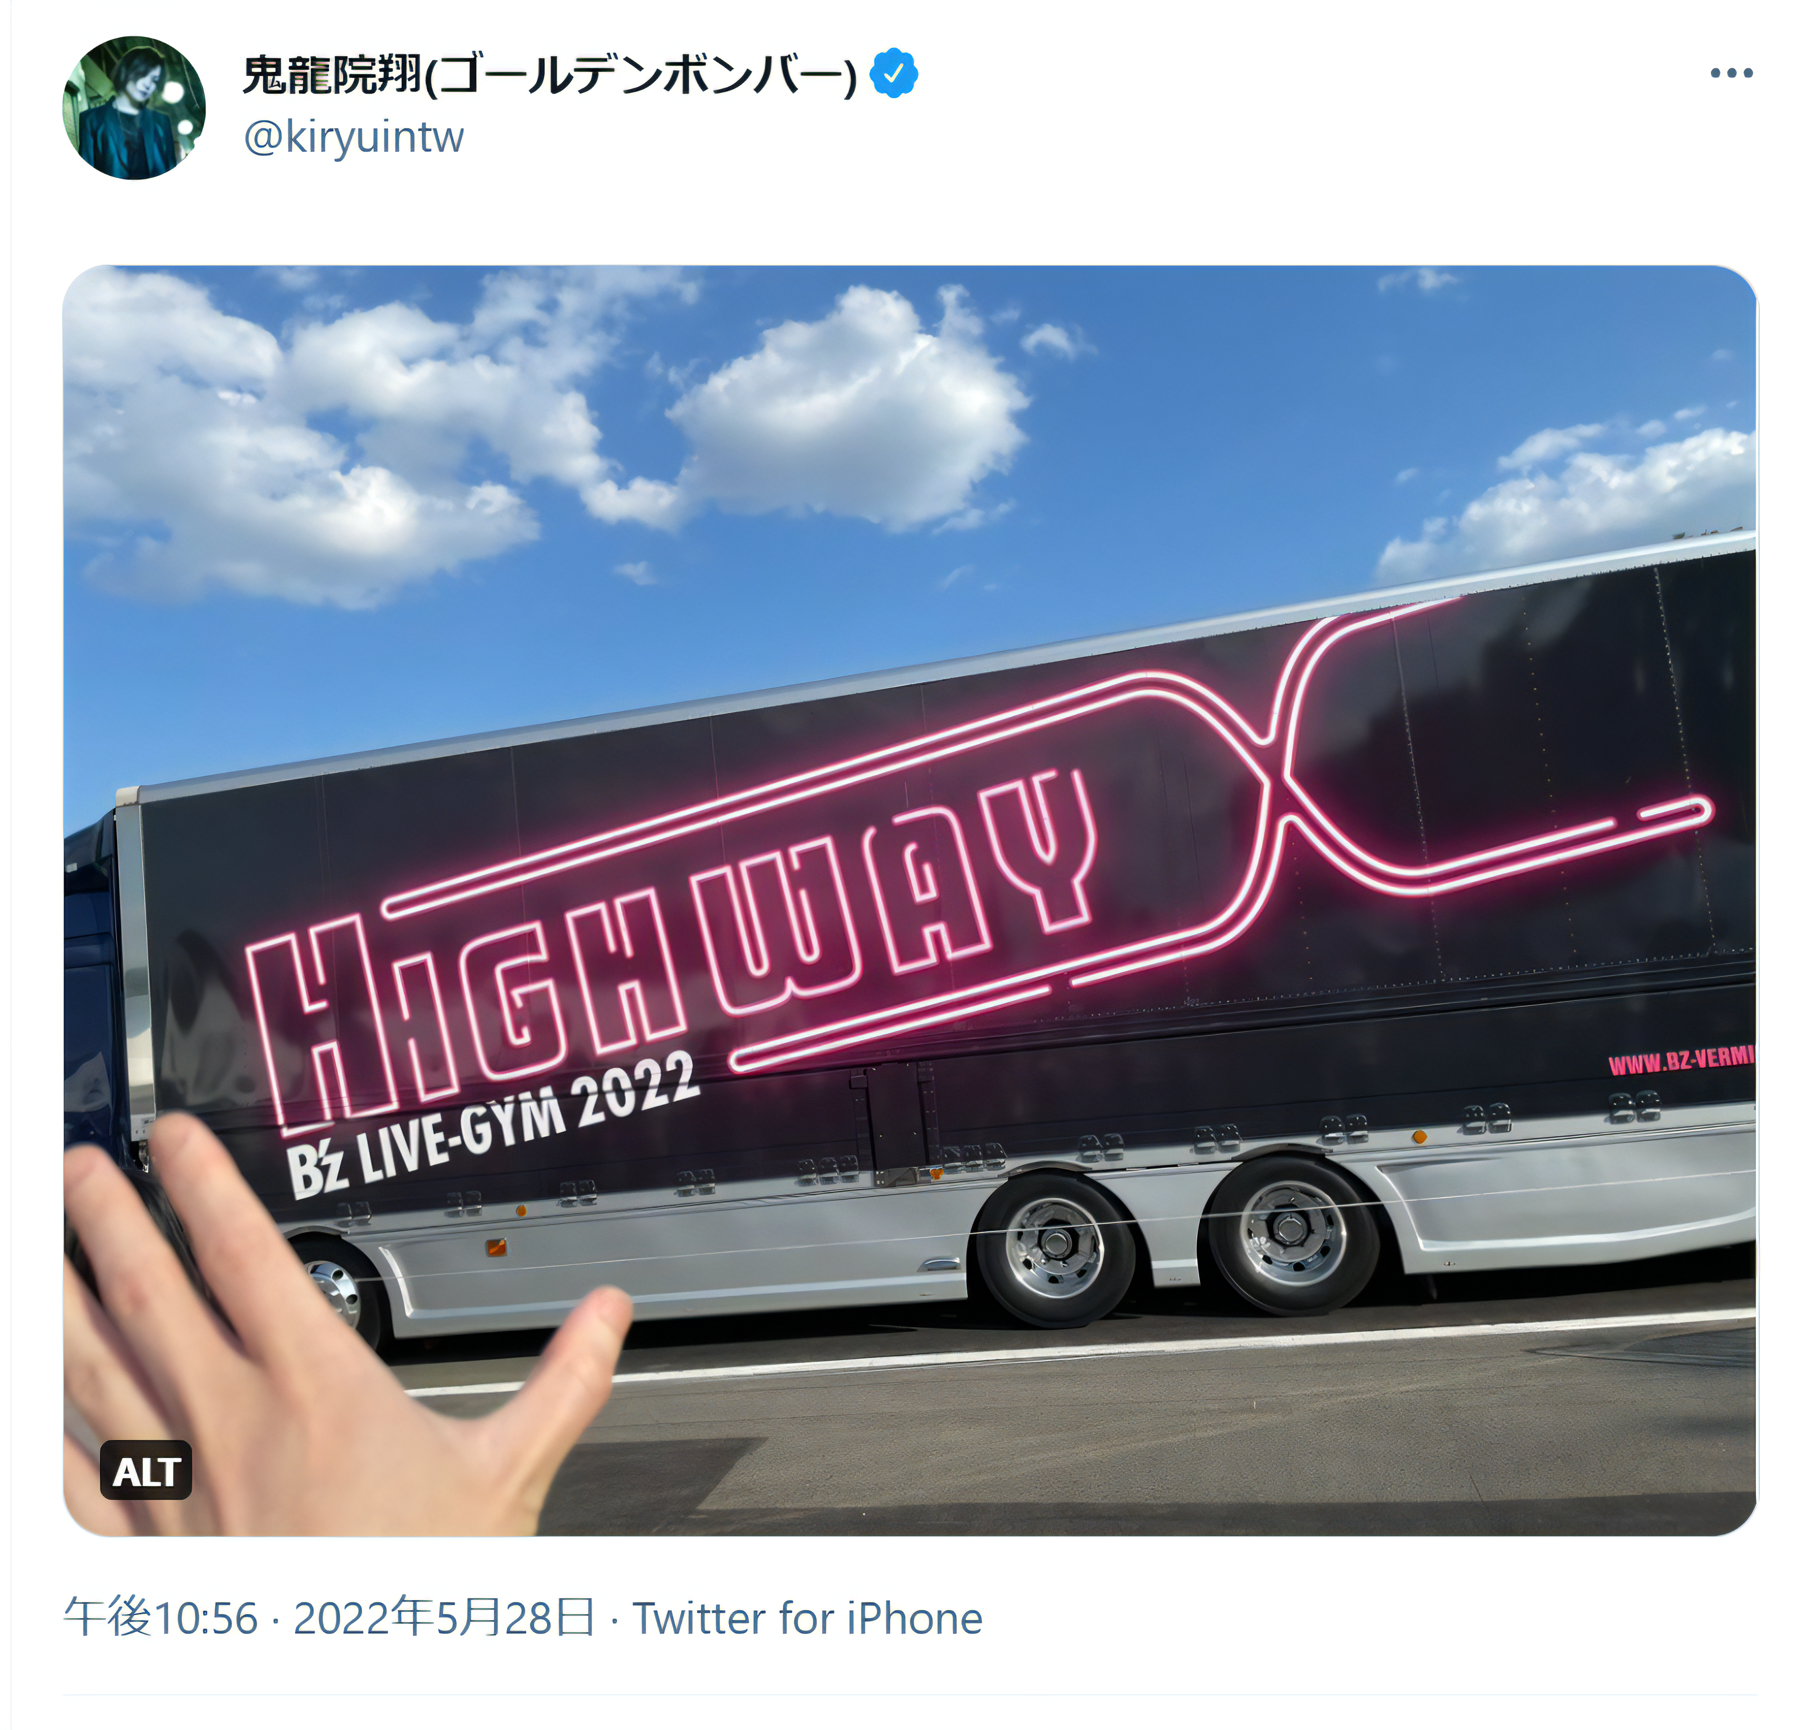 鬼龍院翔が『B'z LIVE-GYM 2022 -Highway X-』東京2日目公演を観覧したとみられる際のツアートラックの写真